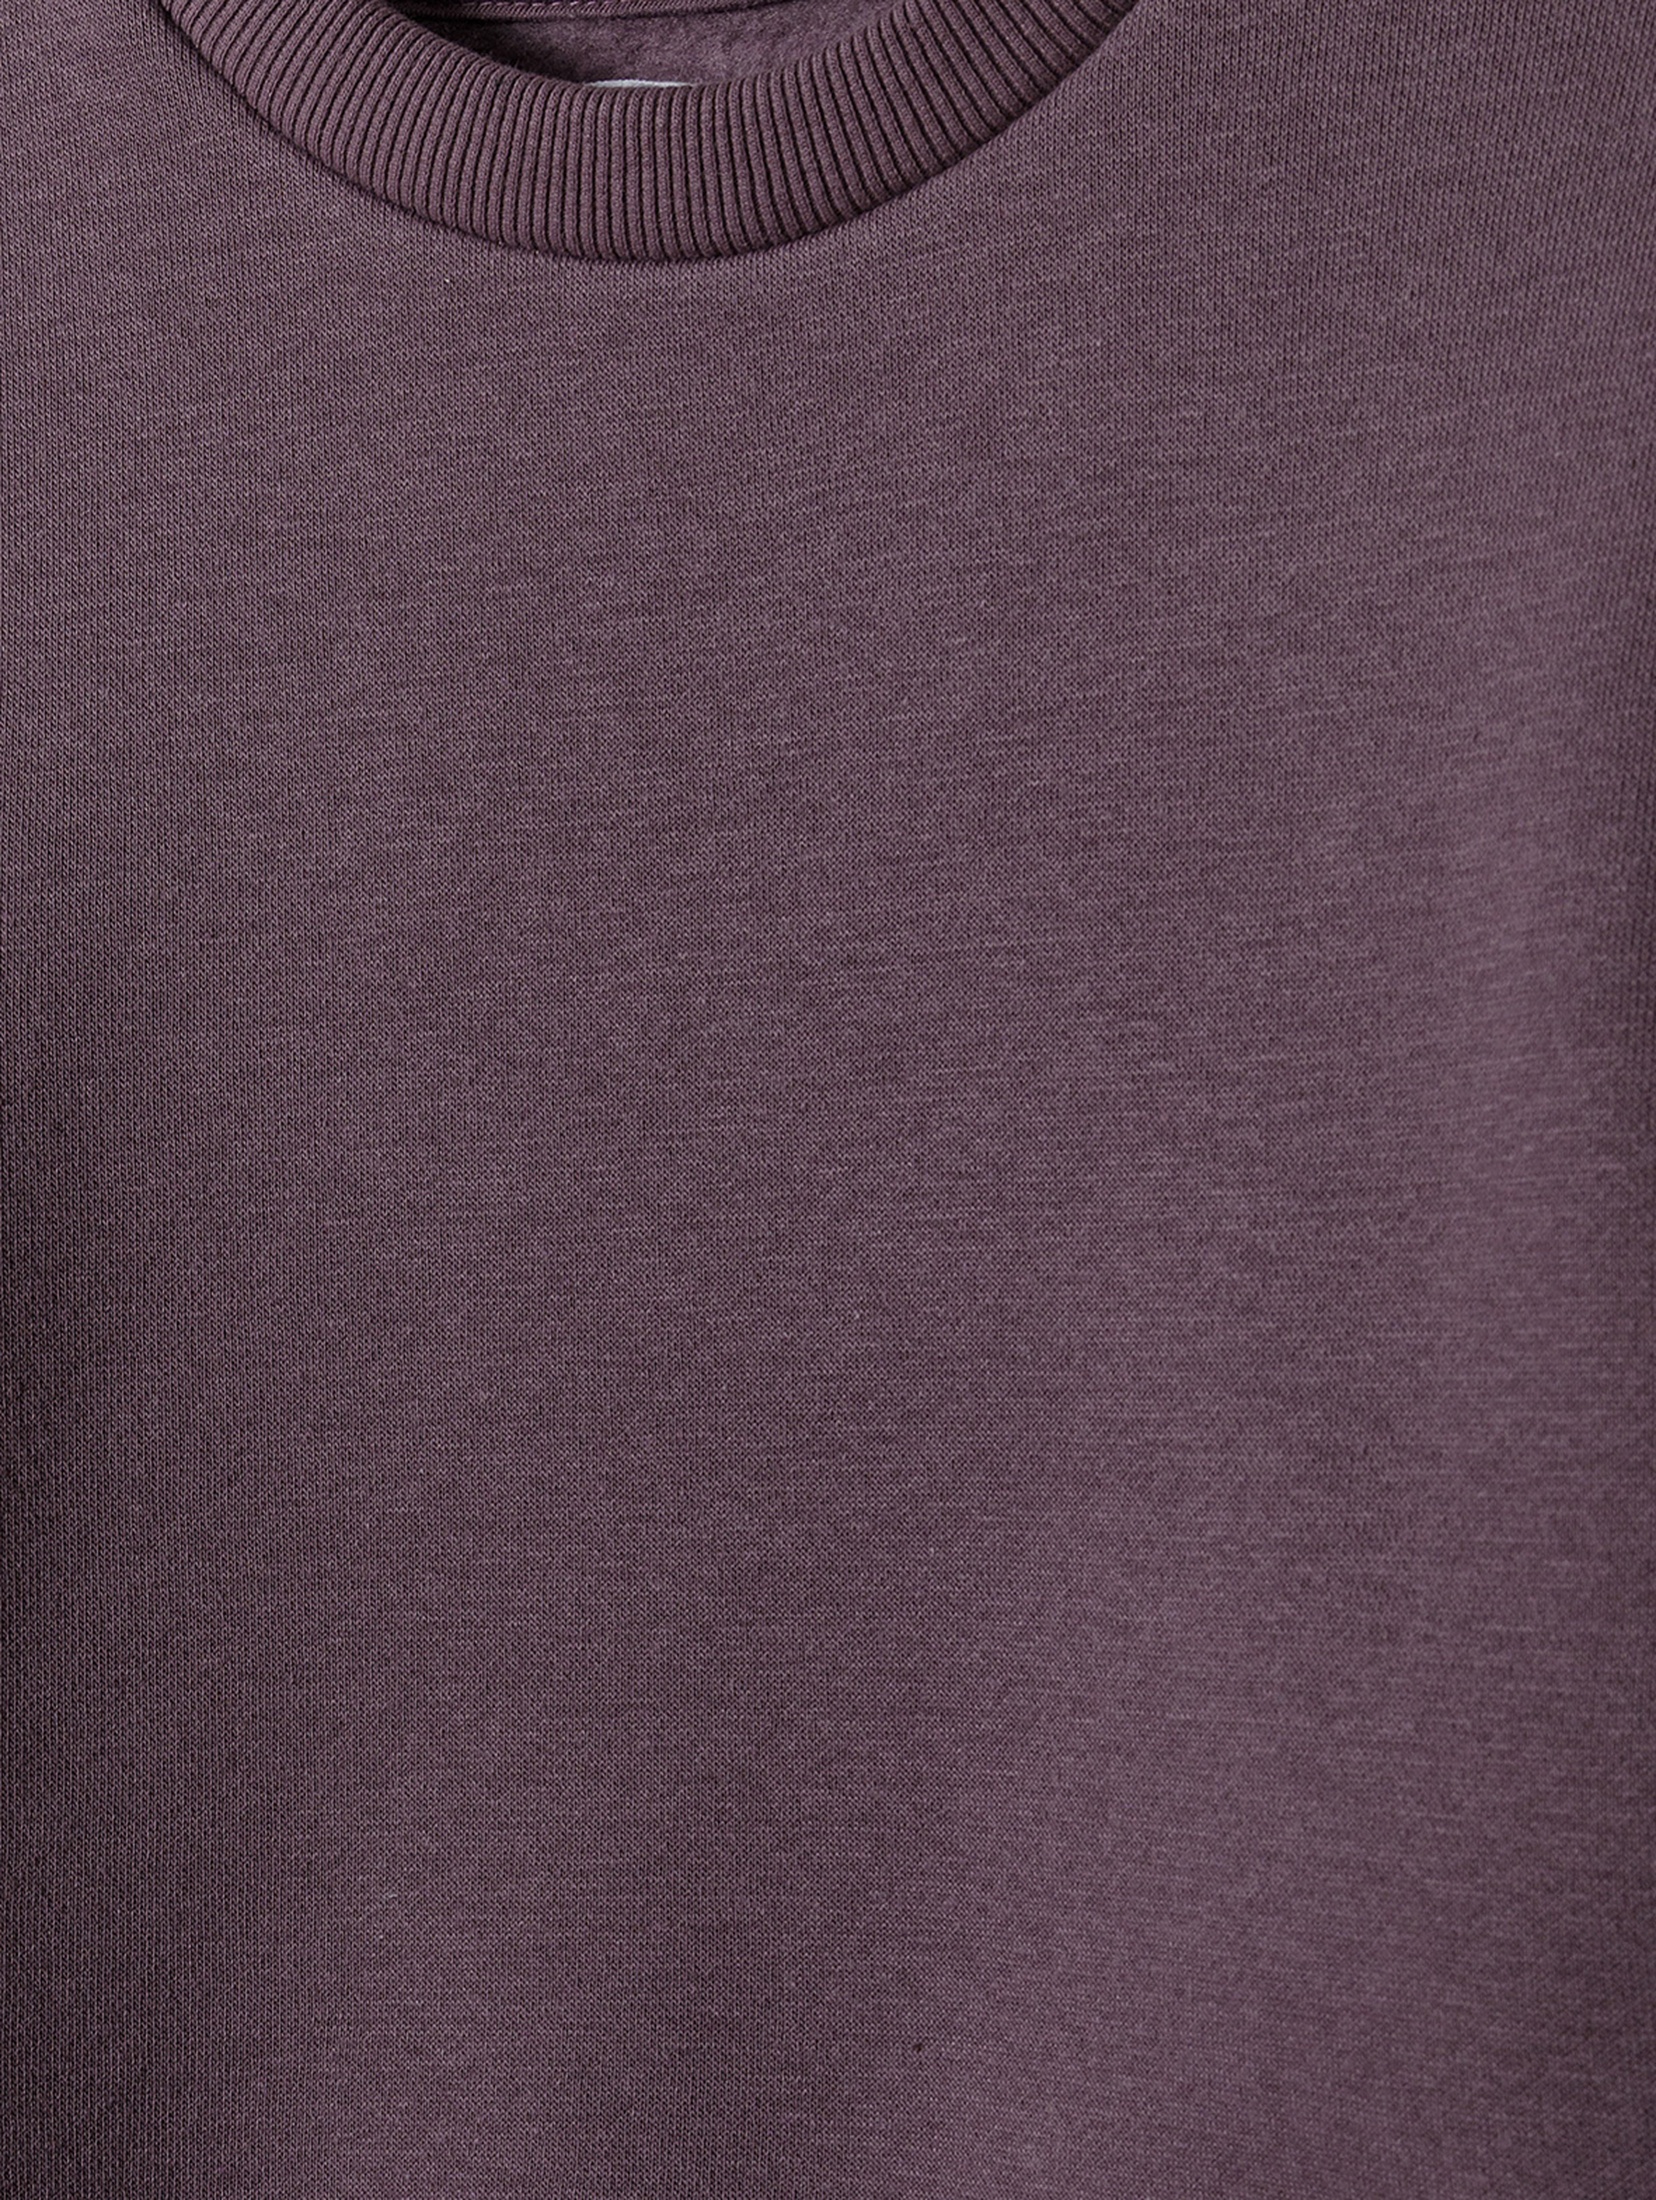 Fioletowy komplet dresowy- bluza z gwiazdkami i spodnie dresowe